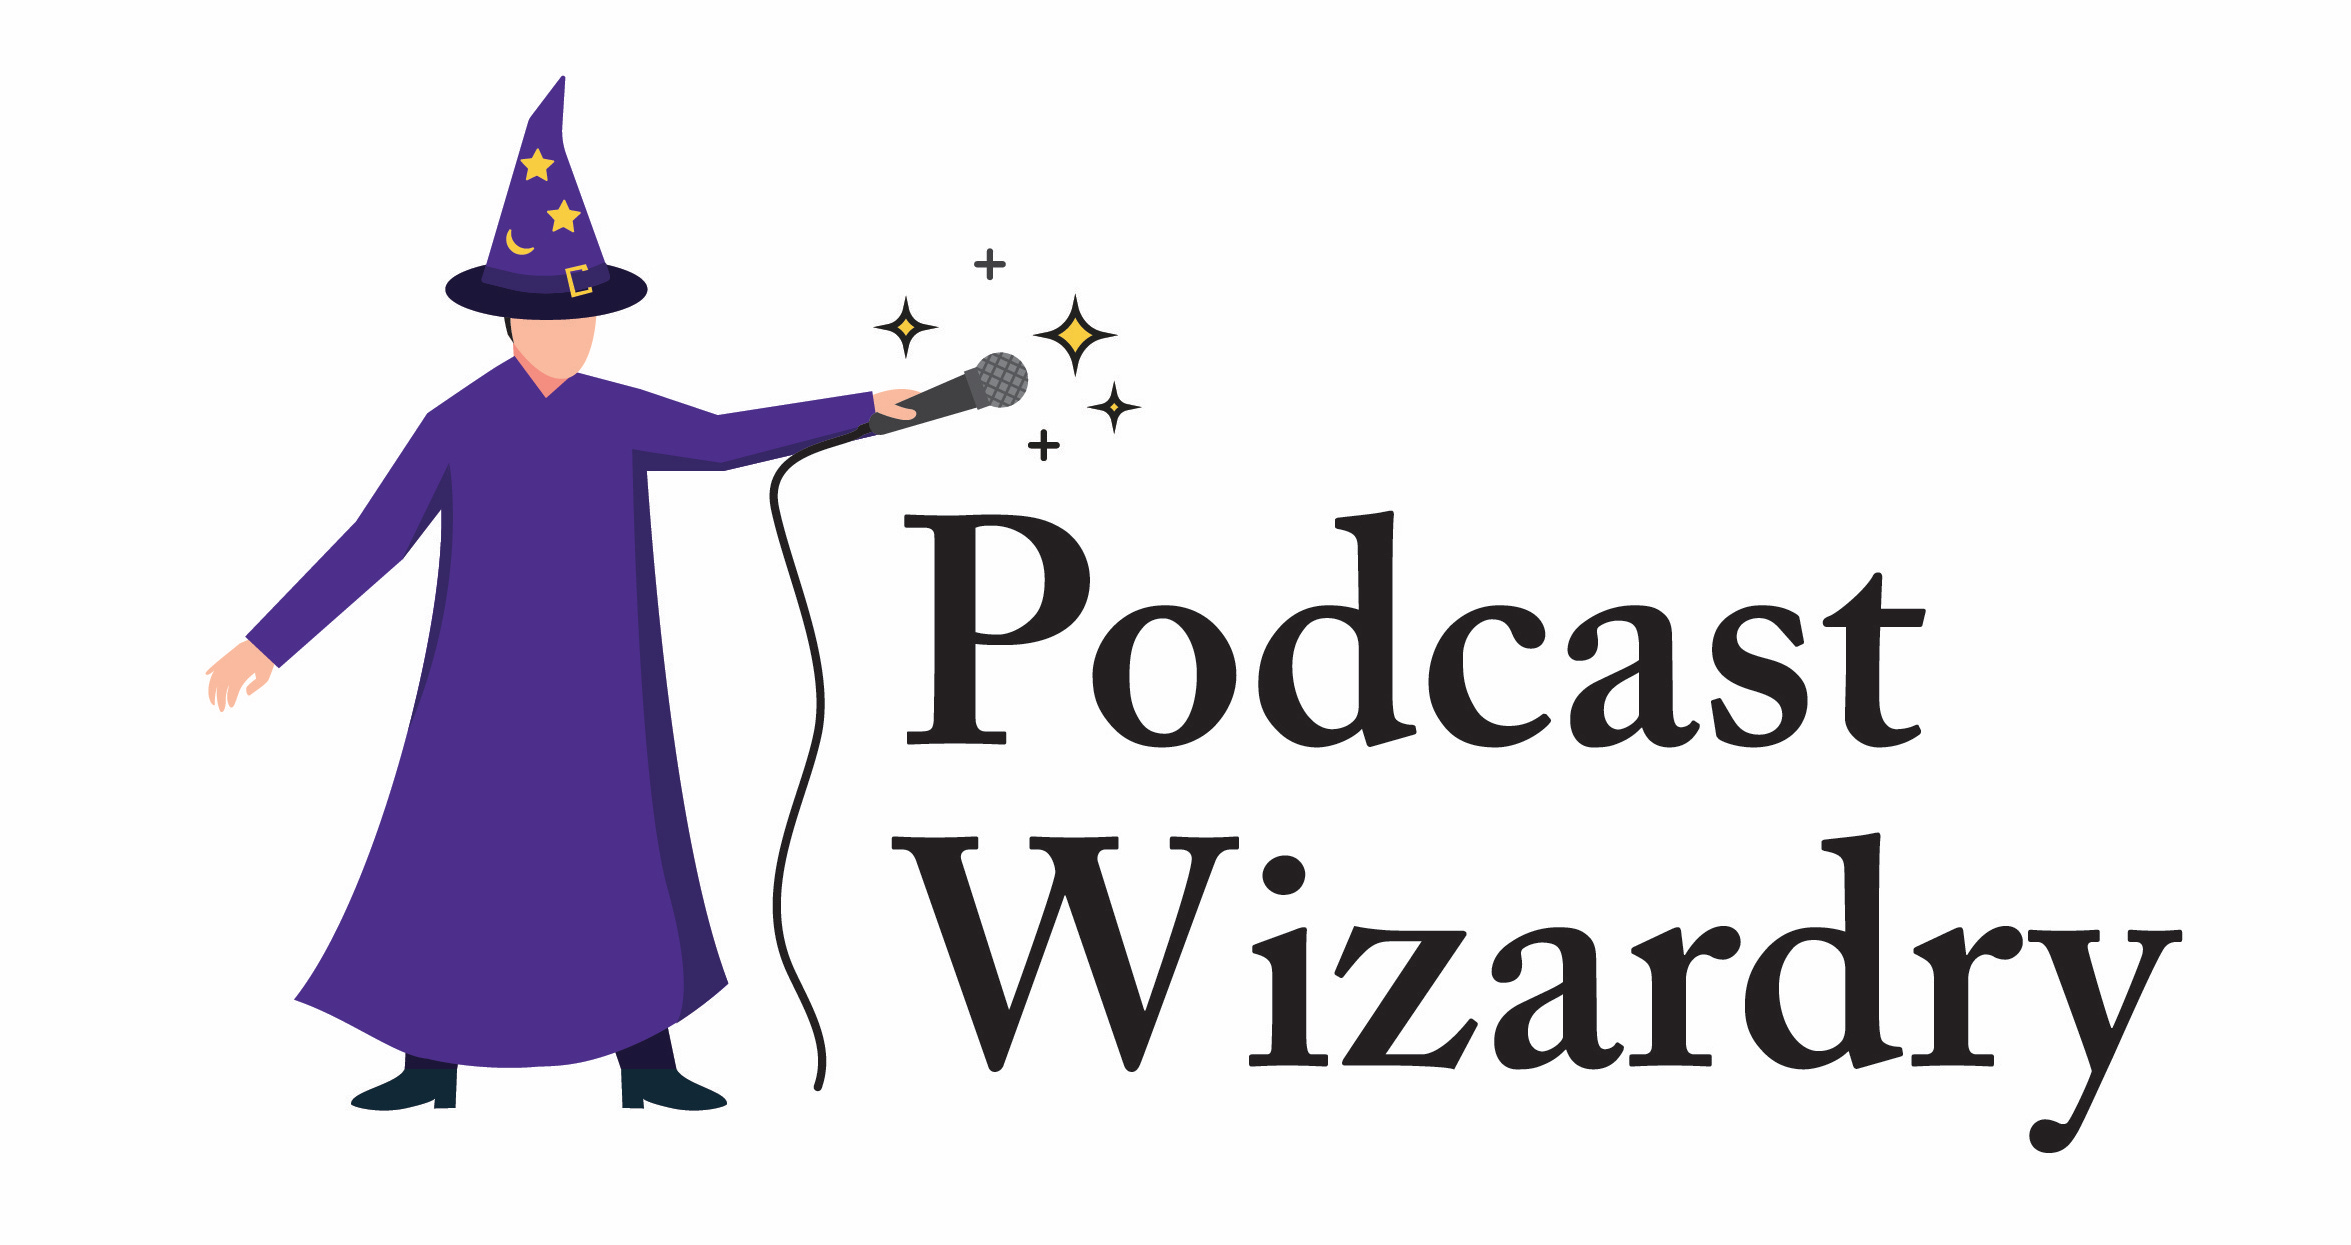 Podcast Wizardry